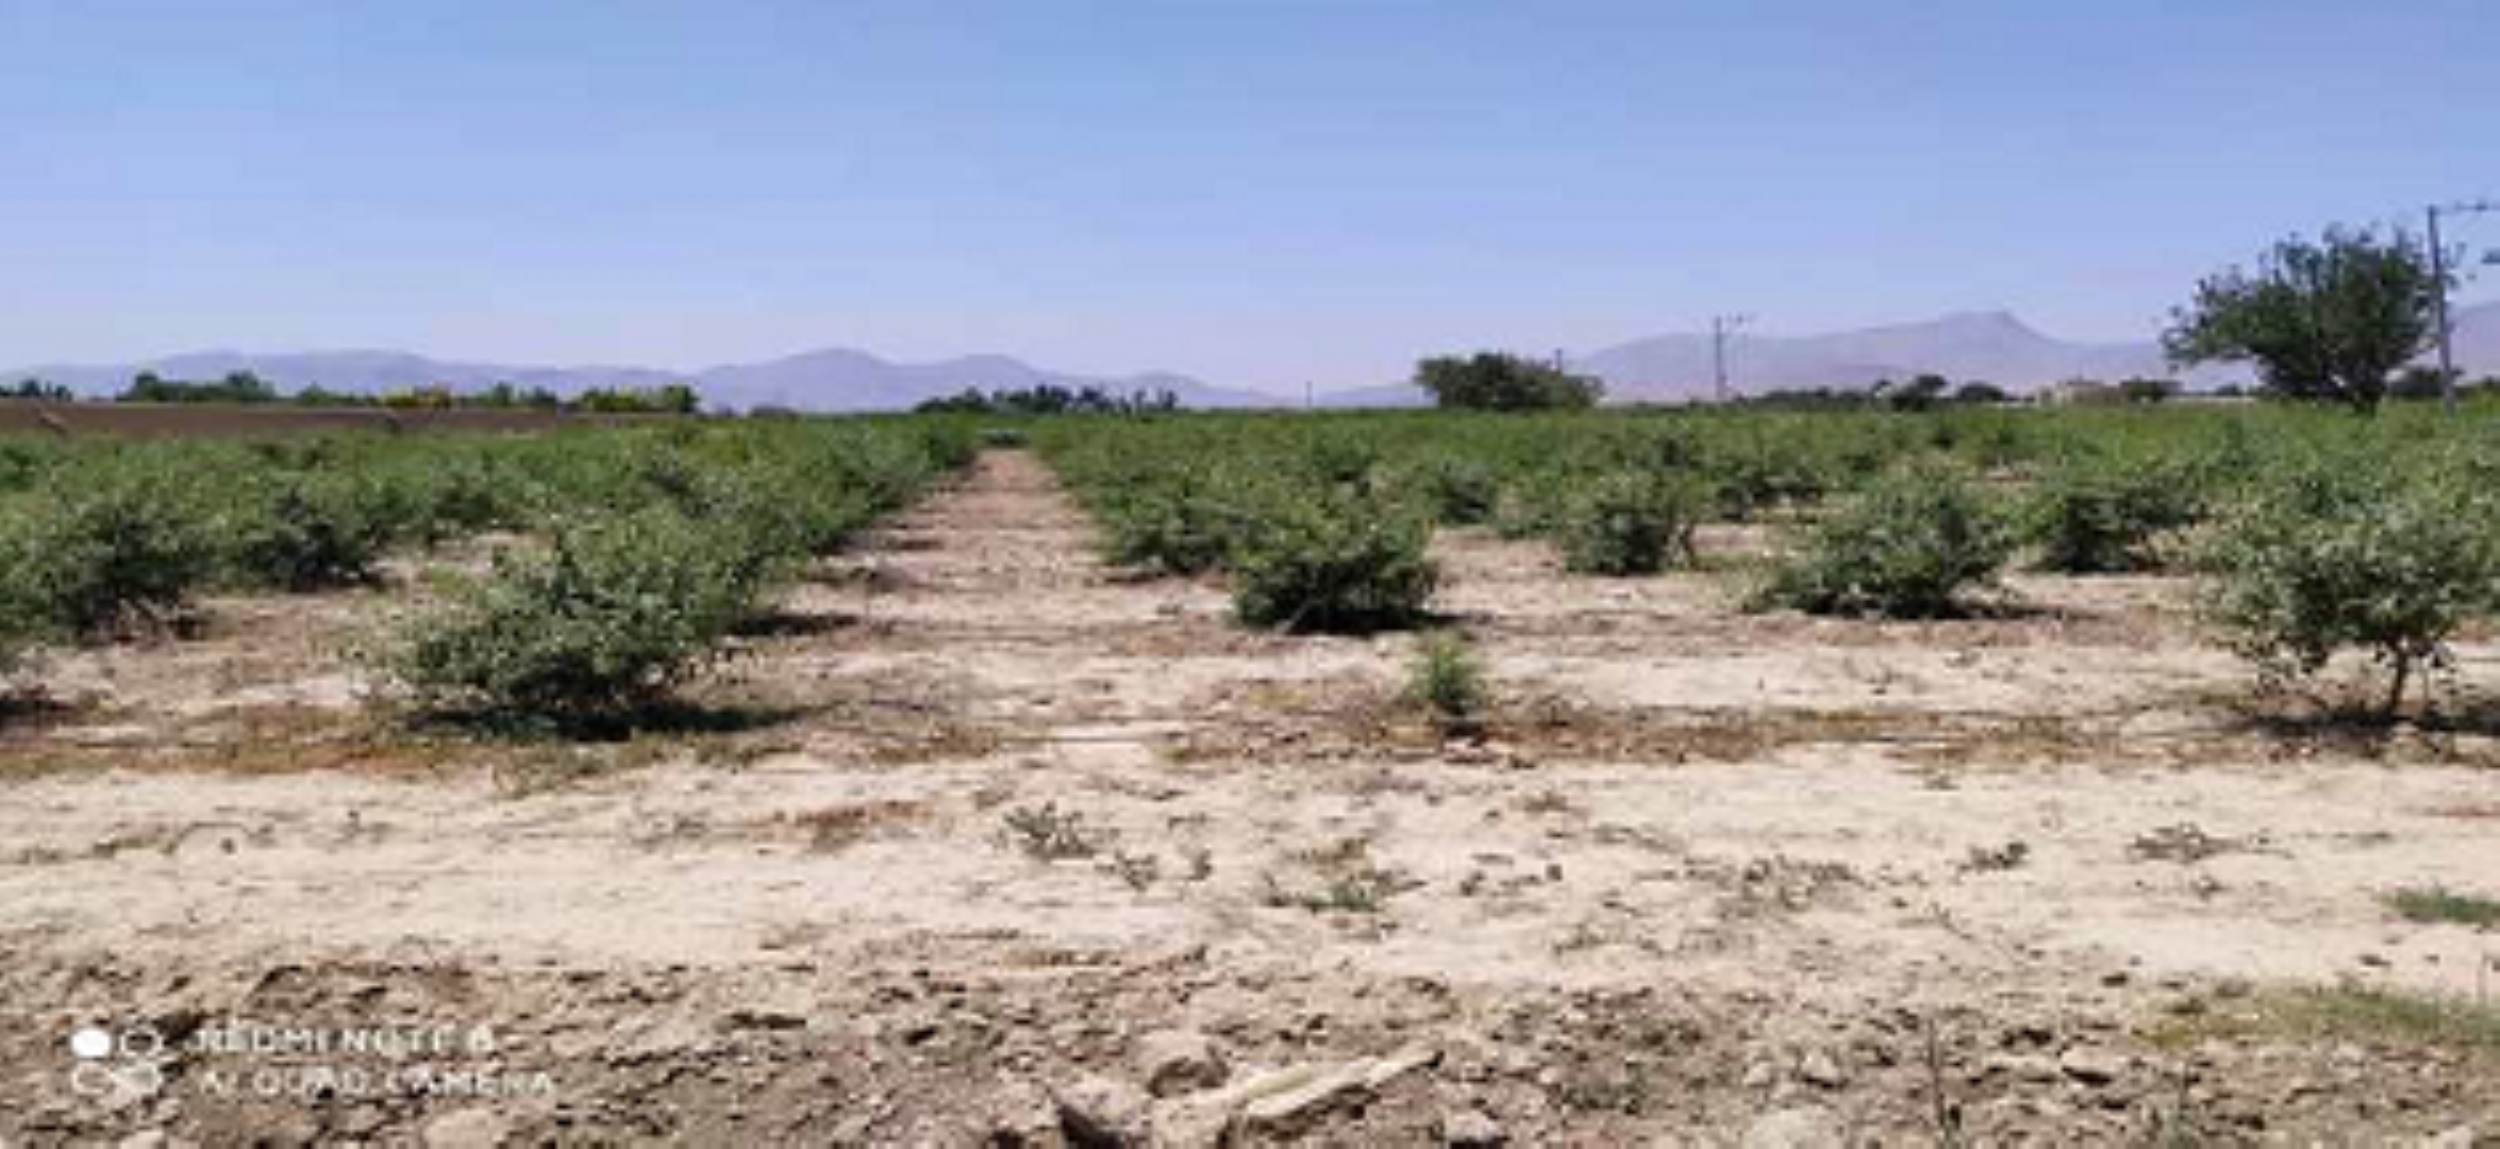 اجرای آبیاری قطره ای در ۶ هکتار از اراضی کشاورزی قهدریجان